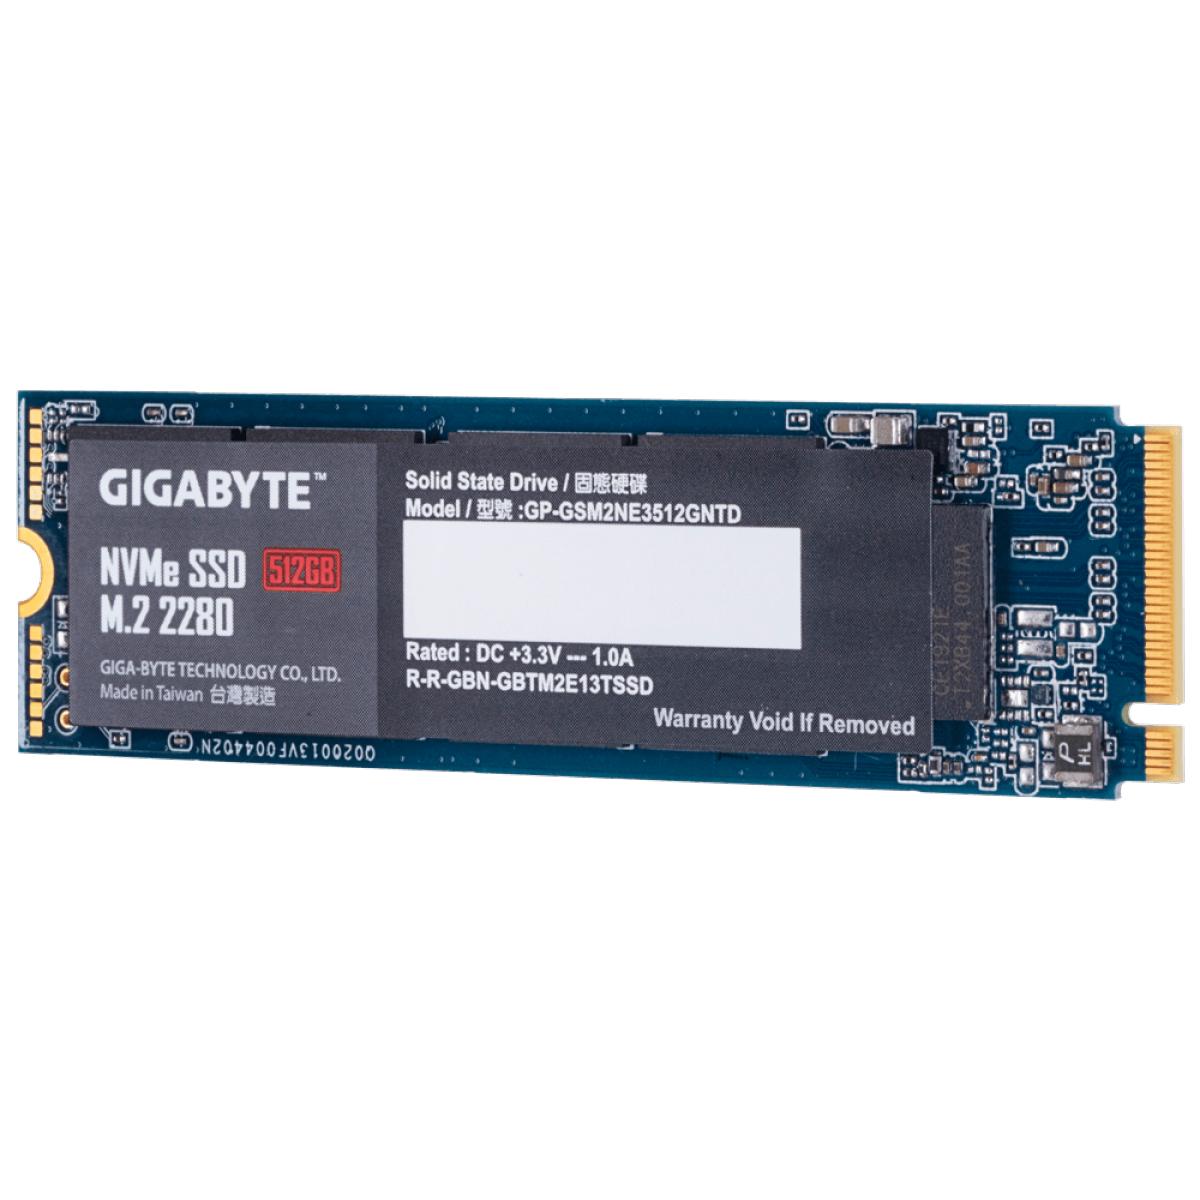 SSD Gigabyte, 512GB, M.2 2280, NVMe, Leitura 1700MBs e Gravação 1550MBs, GP-GSM2NE3512GNTD